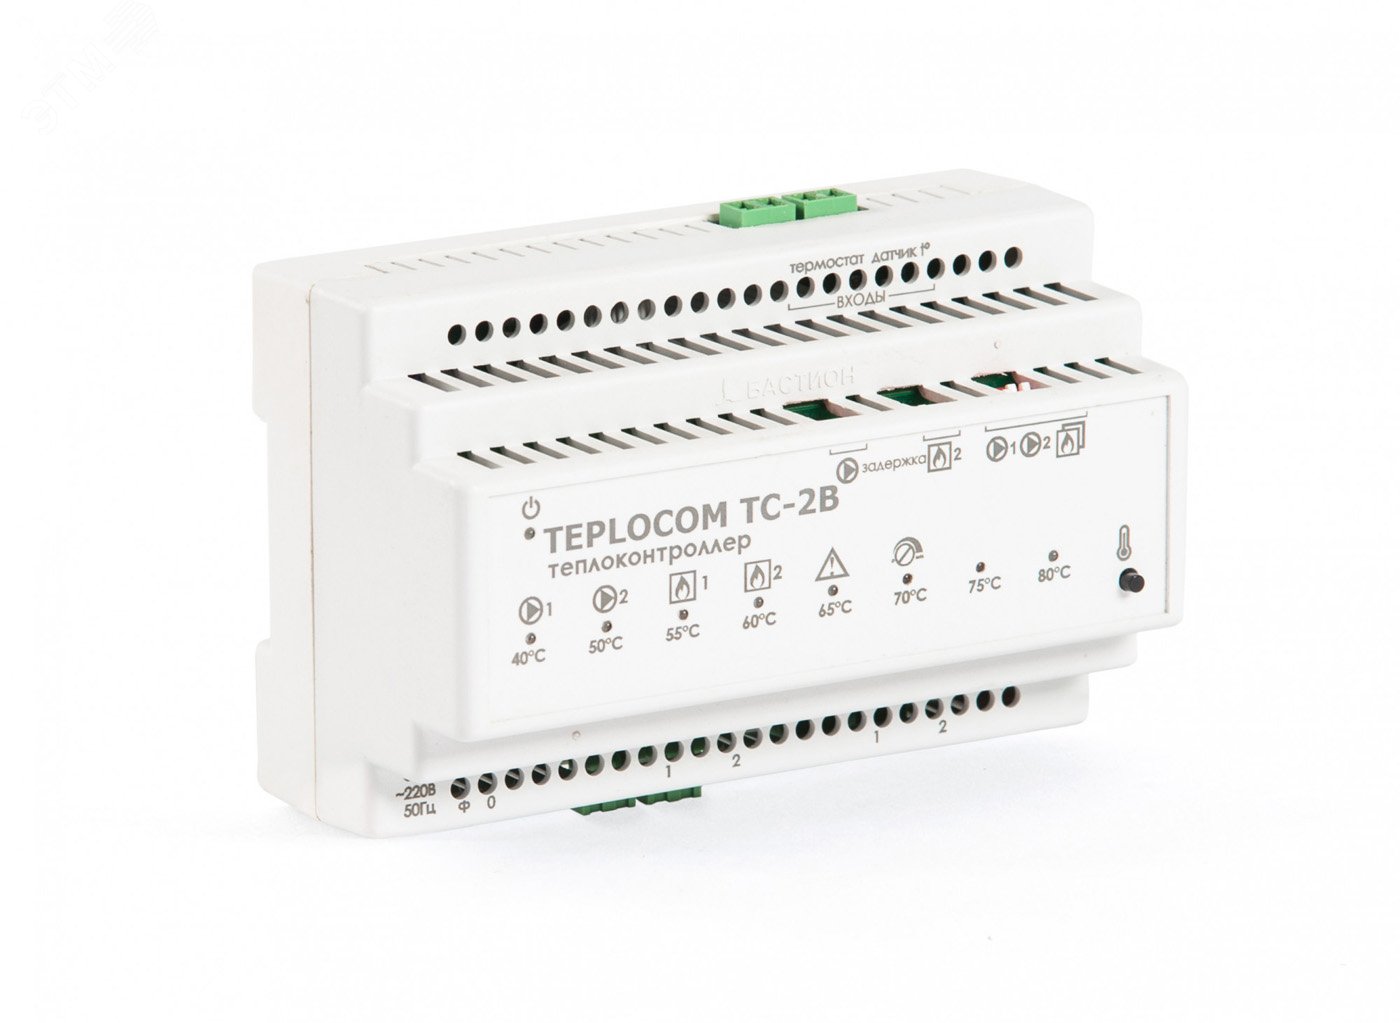 Теплоконтроллер TEPLOCOM TC-2B для систем отопления с 2-я котлами и 2-я насосами 932 Бастион - превью